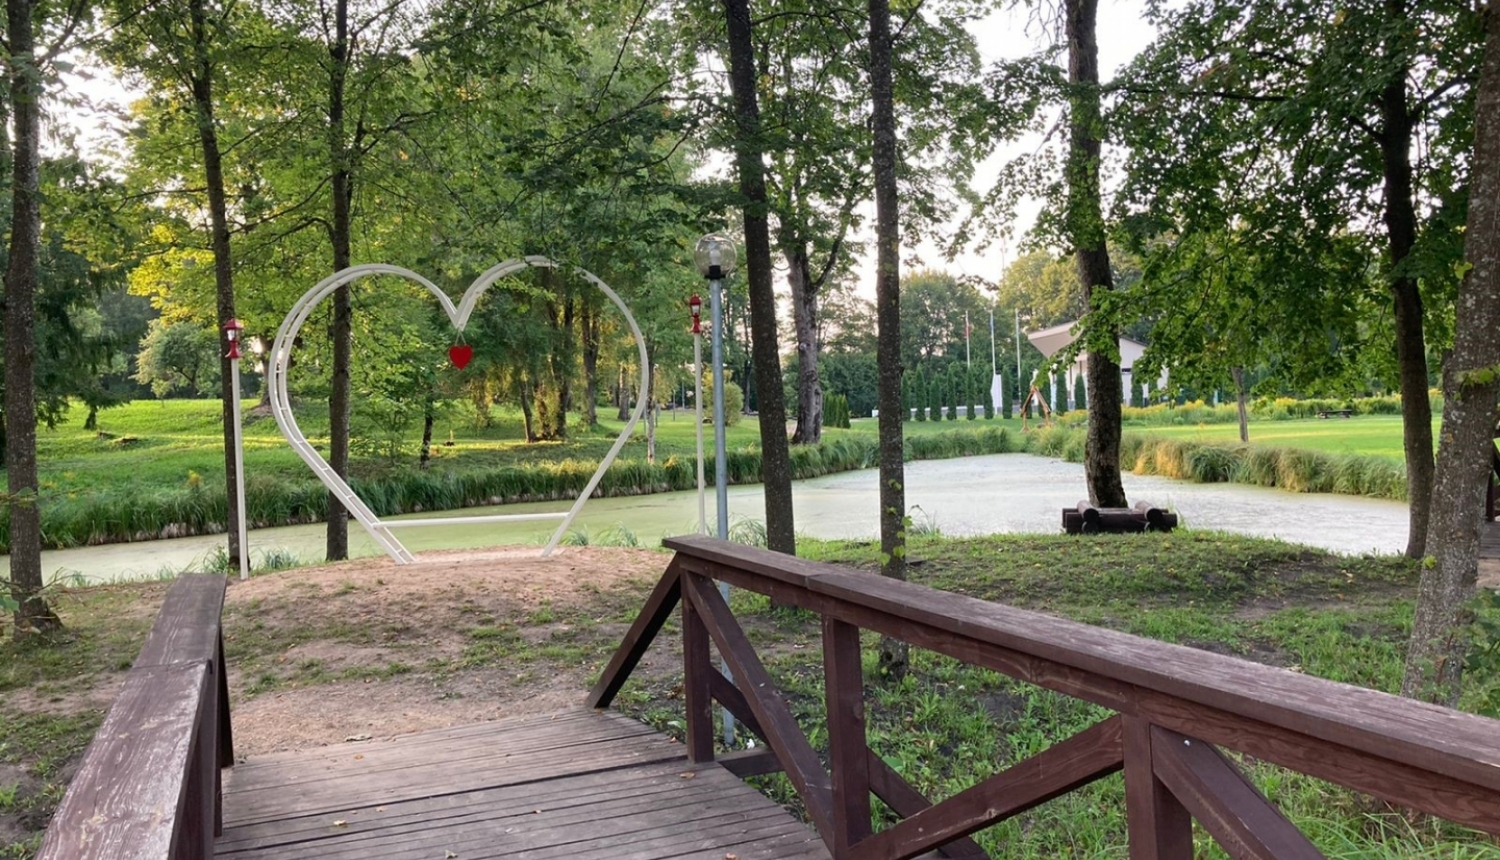 Riebiņu pagasta svētkos parkā atklāts jauns vides objekts